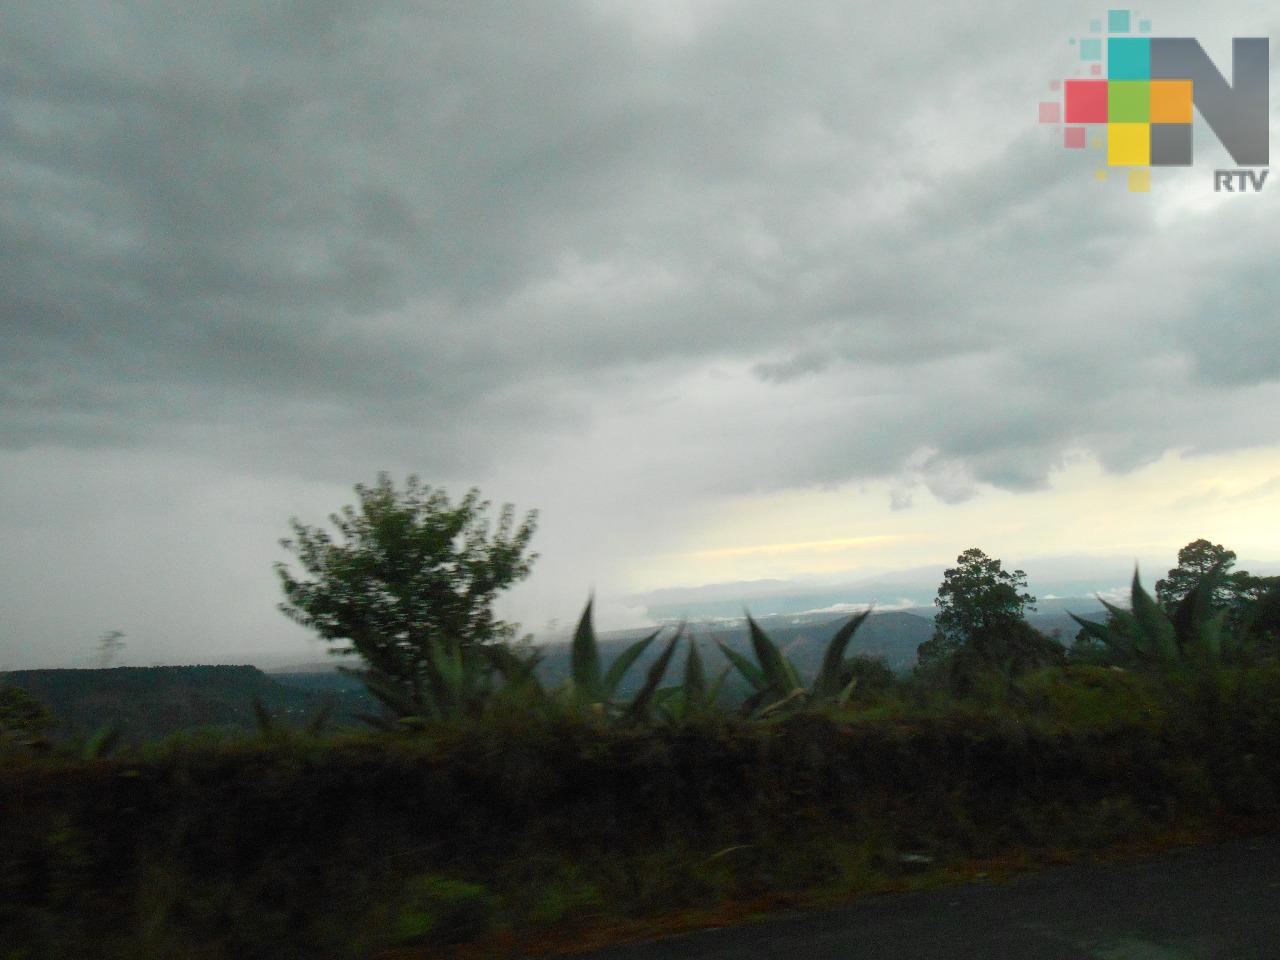 Cielo medio nublado en gran parte de Veracruz; lluvias por la tarde-noche